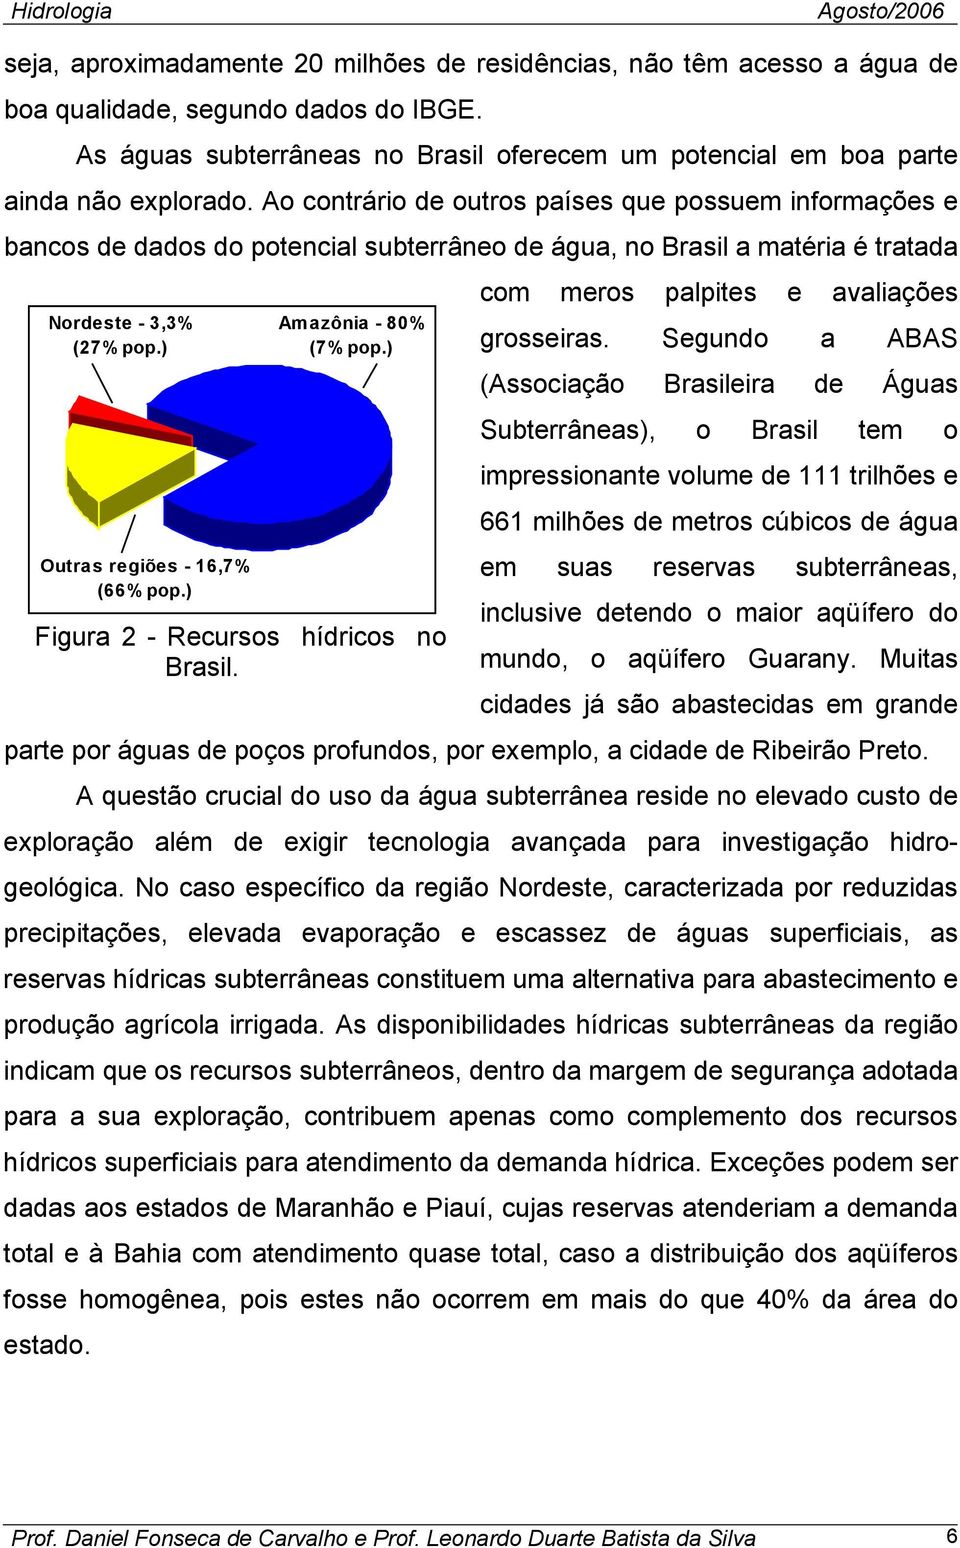 ) Amazônia - 80% (7% pop.) Figura 2 - Recursos hídricos no Brasil. com meros palpites e avaliações grosseiras.